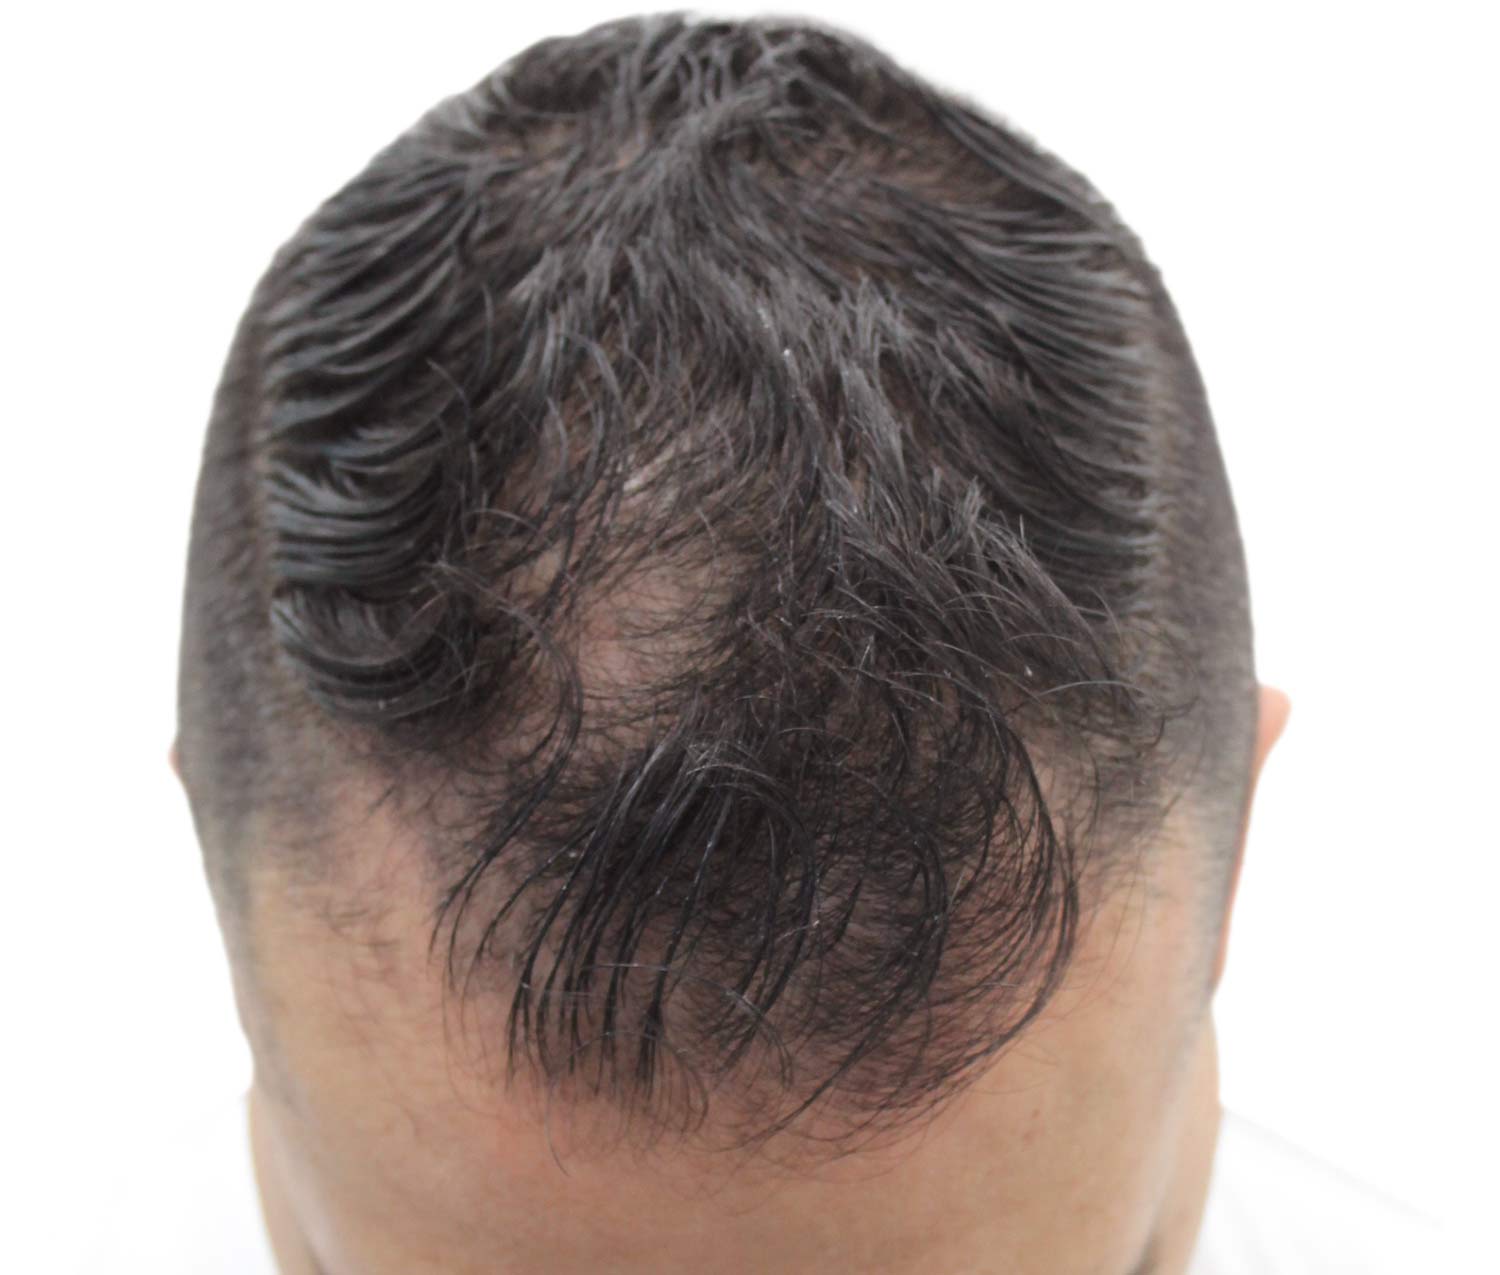 a close up of a man 's head with a bald spot on it .